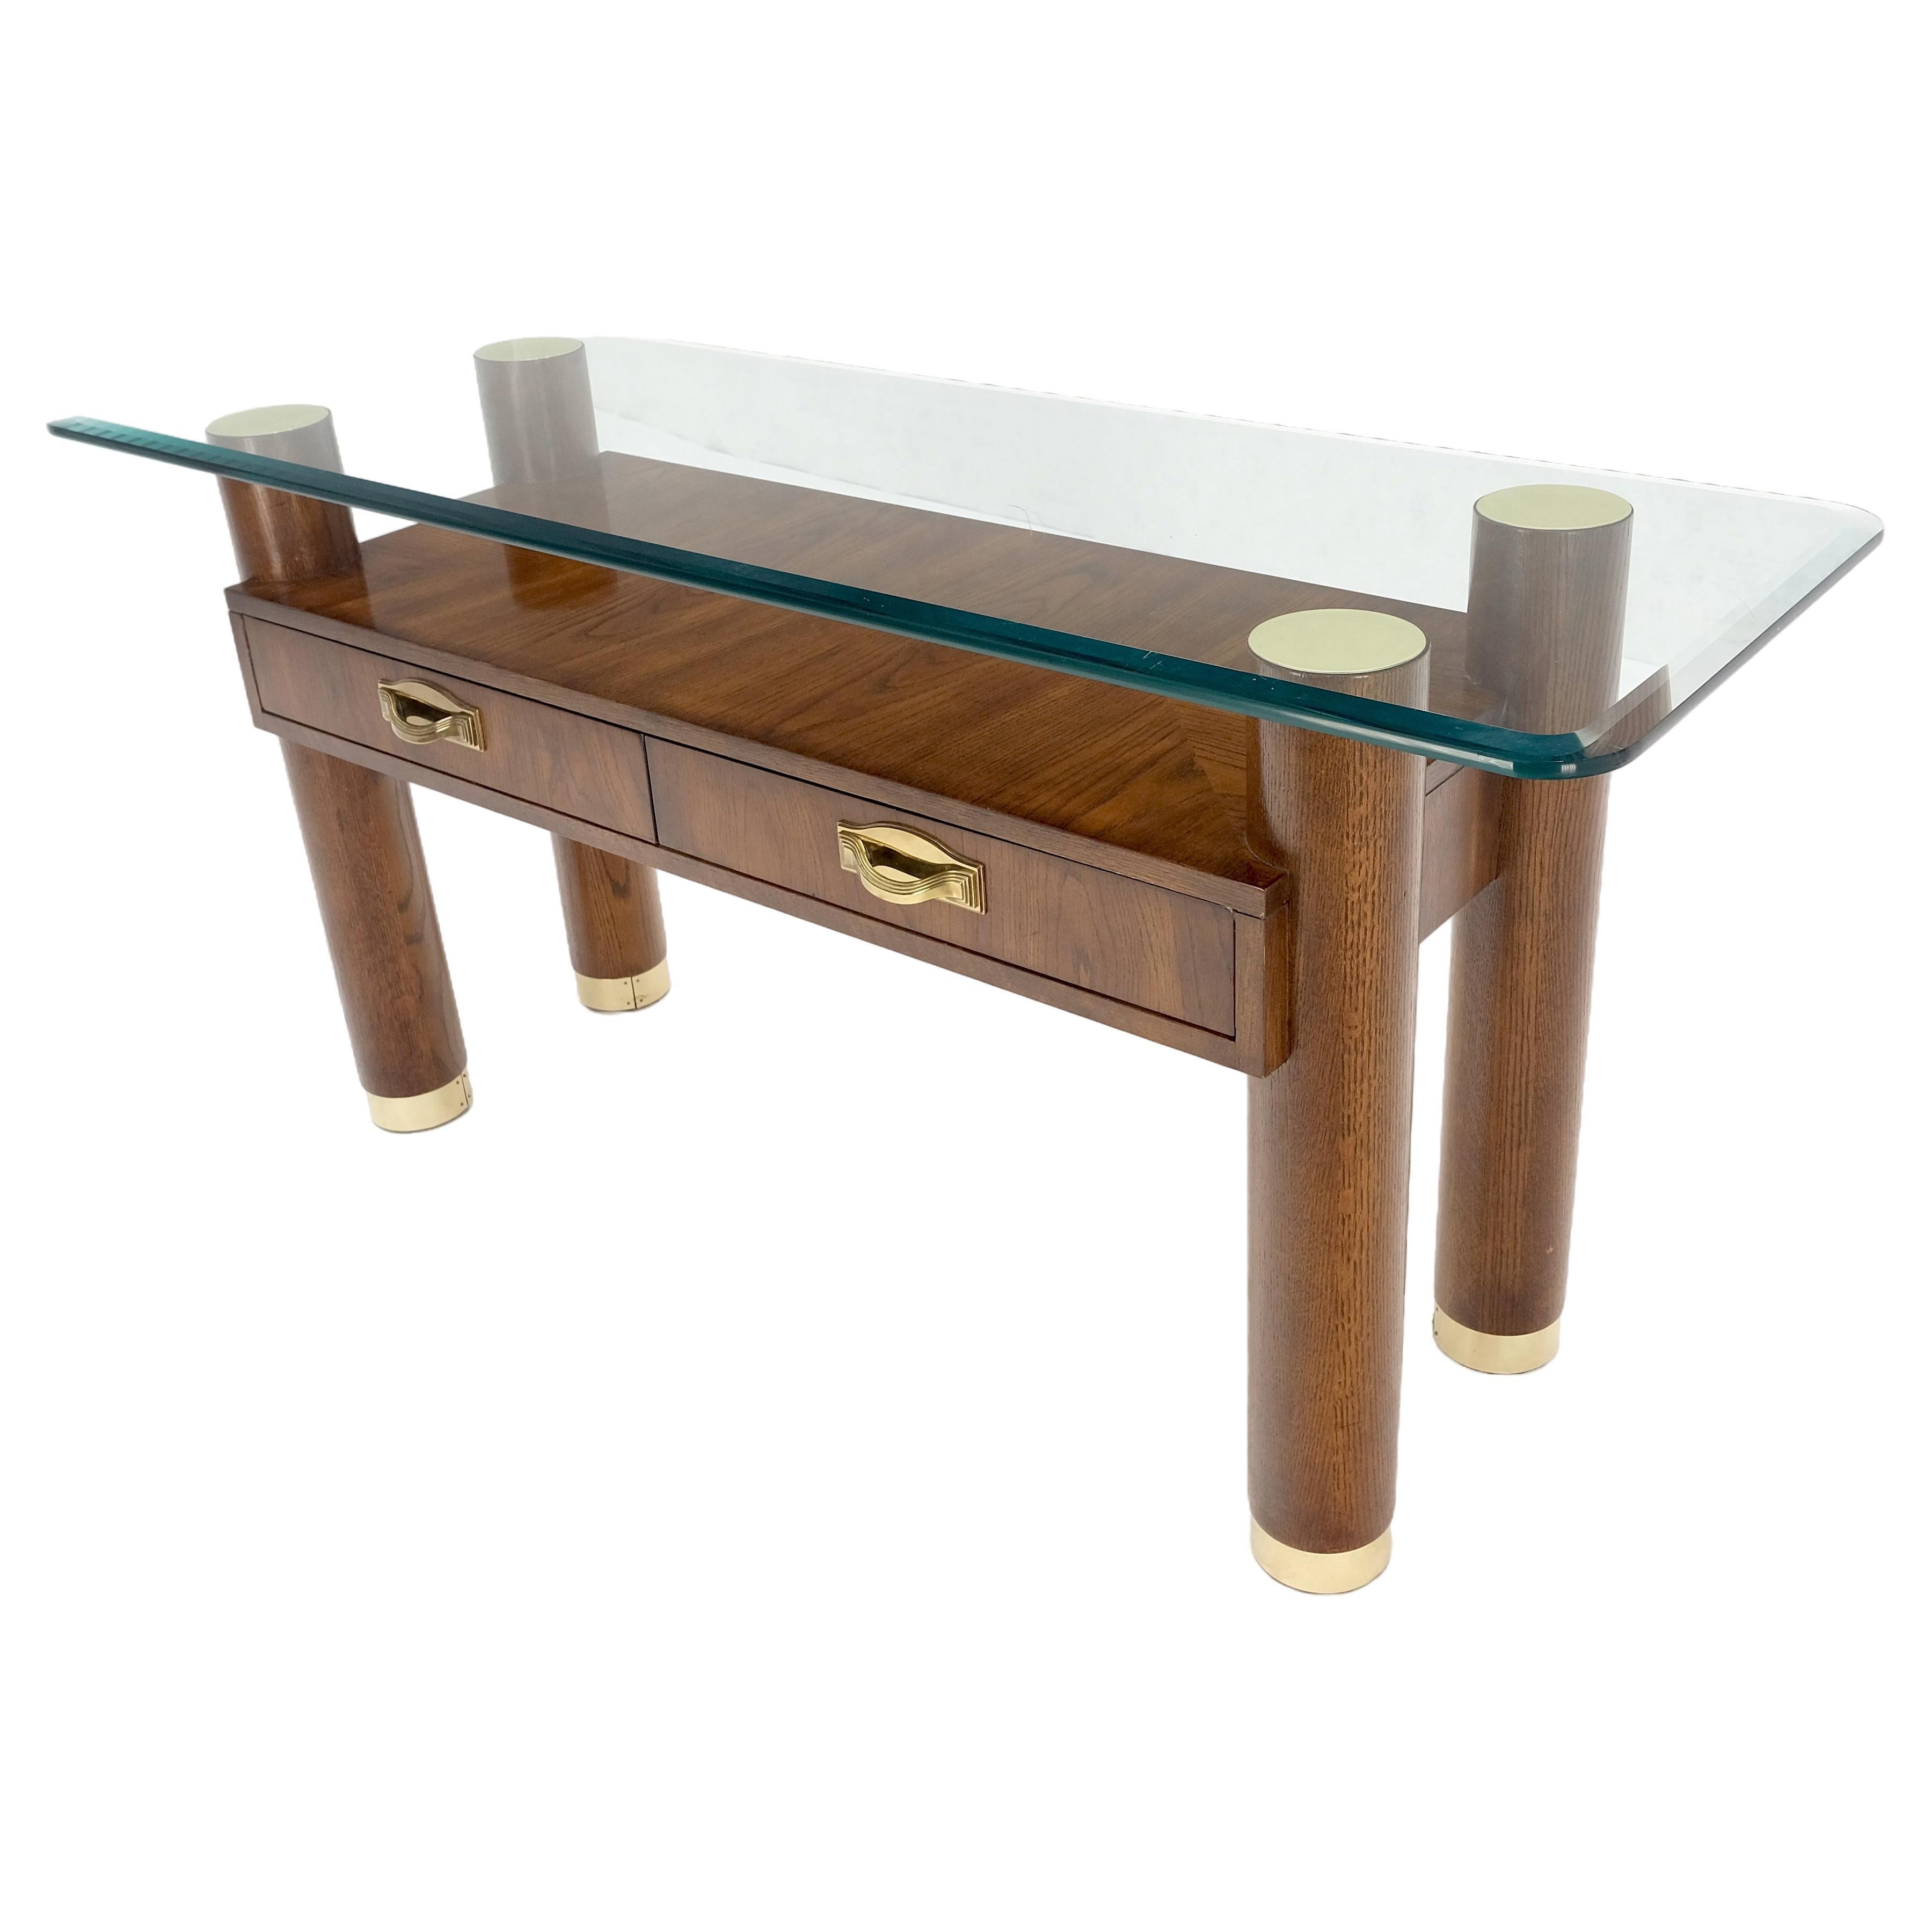 Table console à deux tiroirs en Oak Oak massif, pieds cylindriques, quincaillerie en laiton MINT